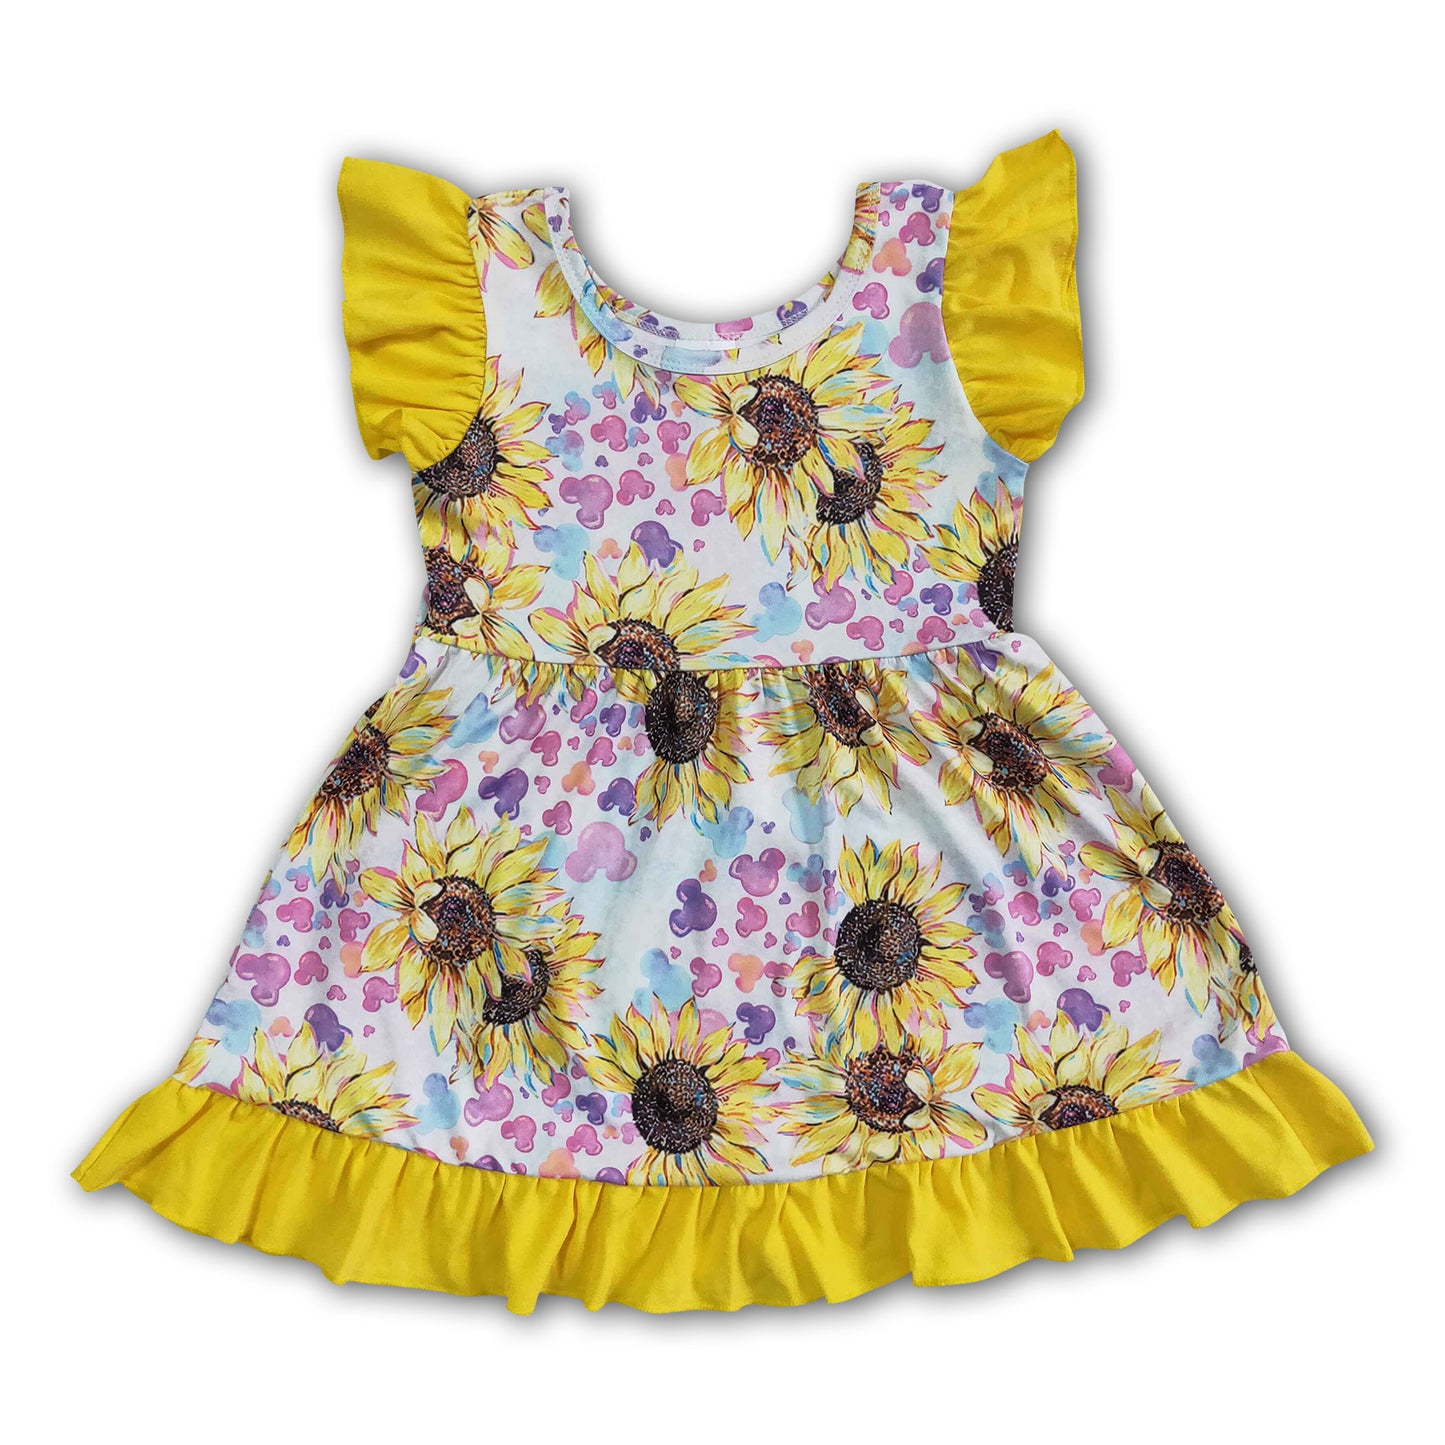 Sunflower flutter sleeve girls children summer dresses